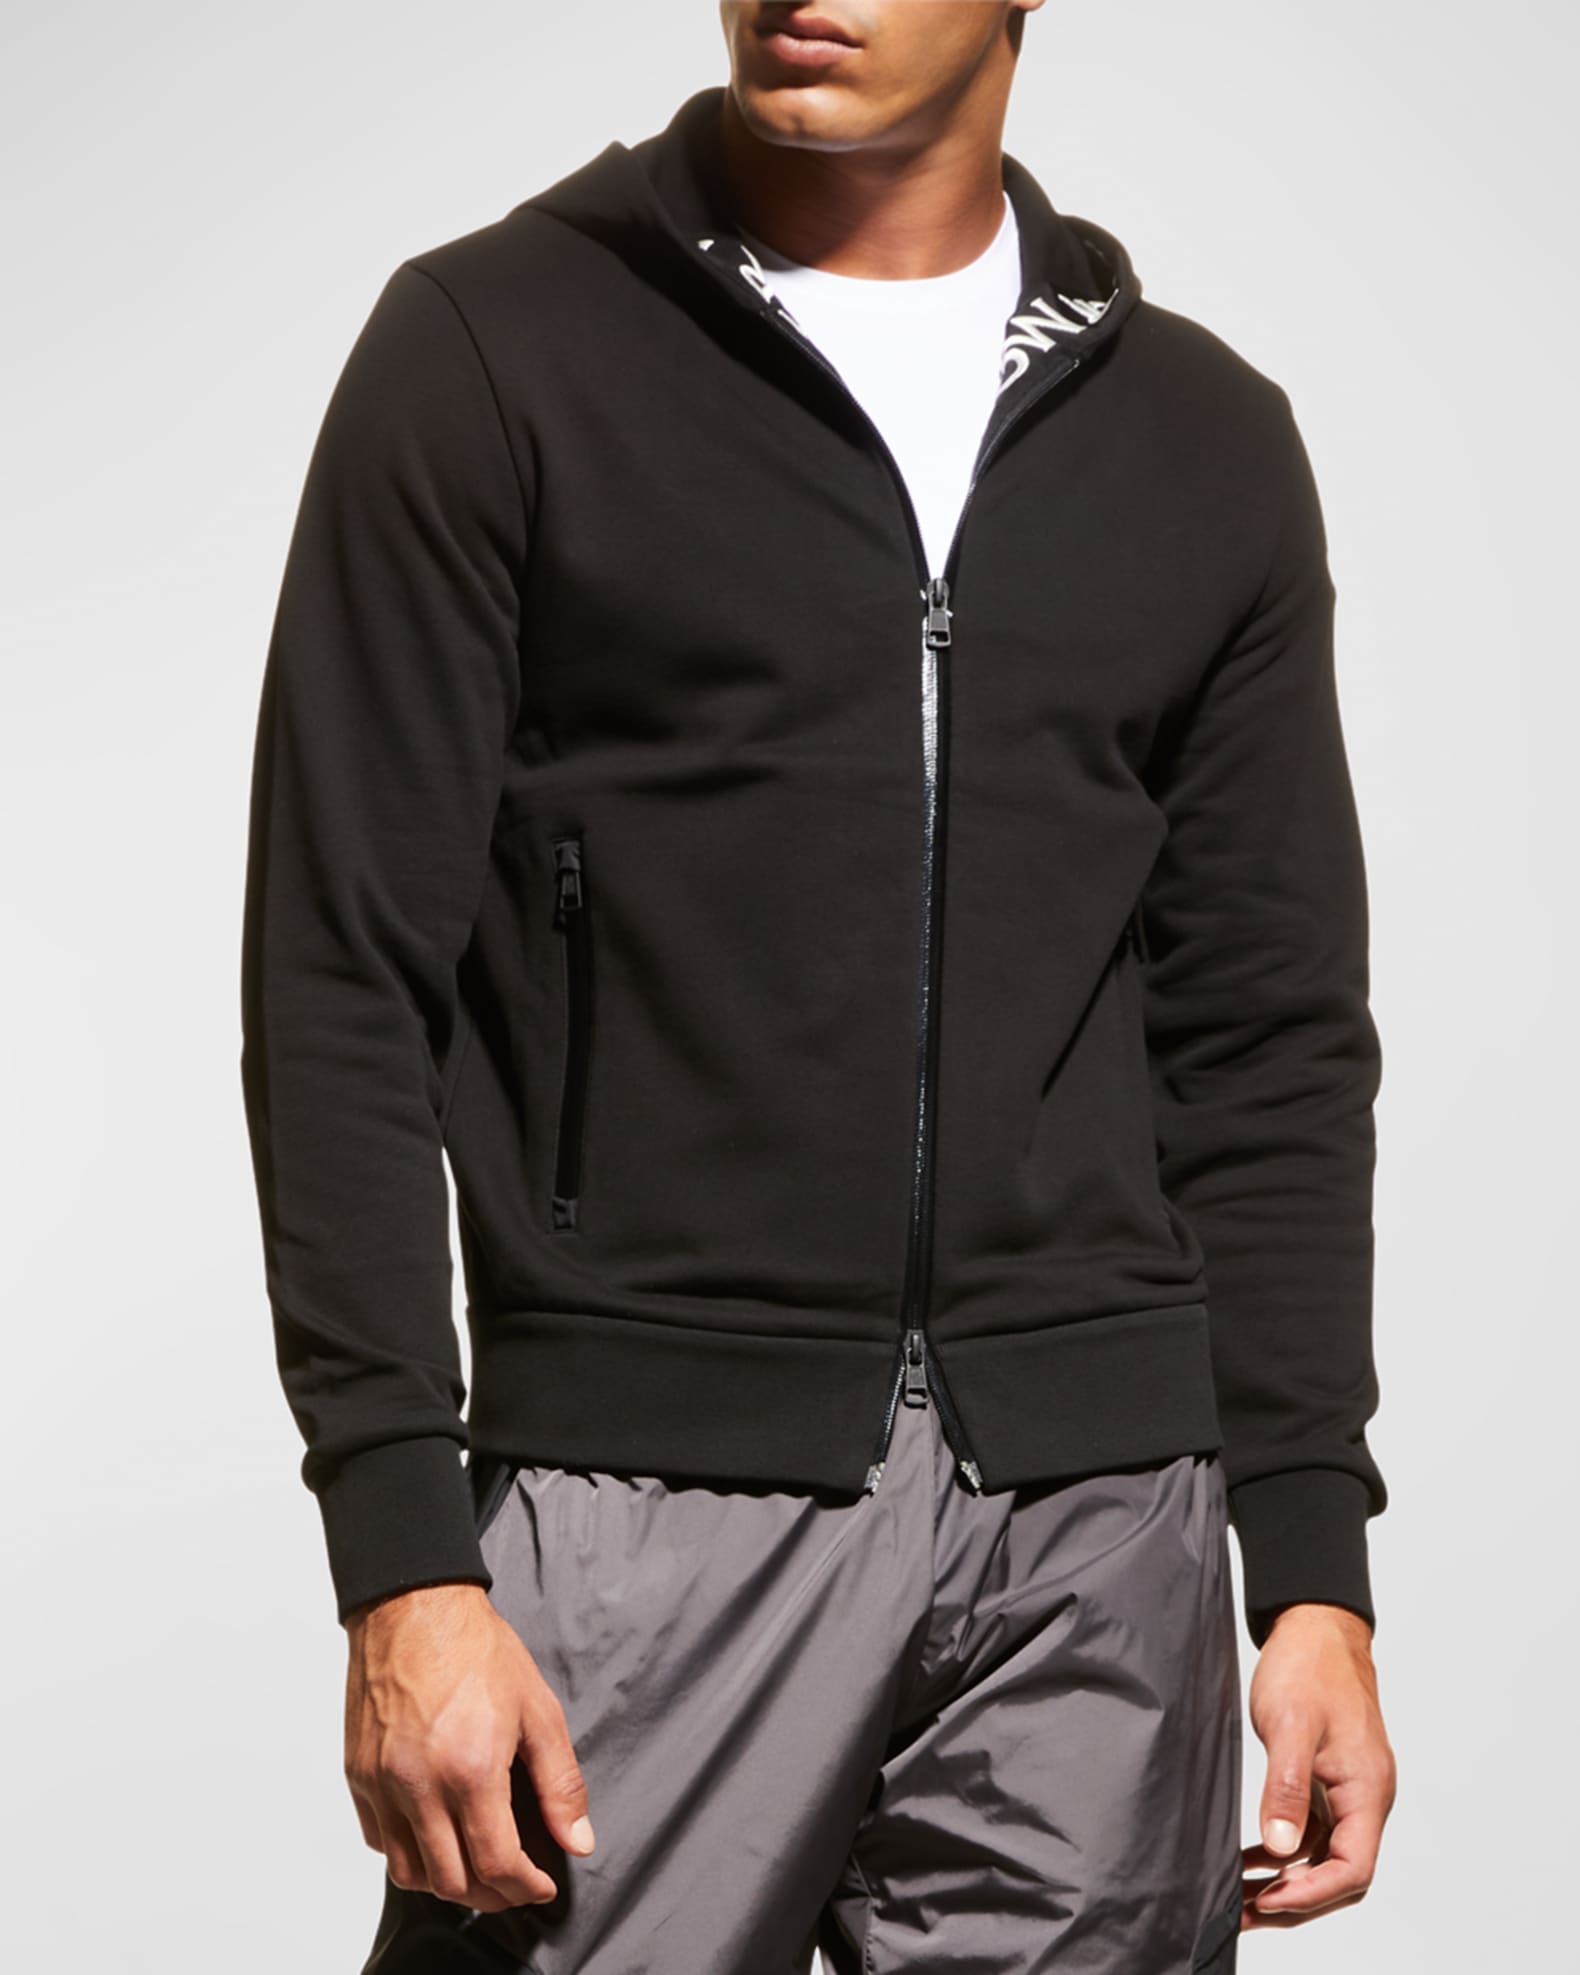 Armani Exchange Men's Zip Up Hooded Sweatshirt